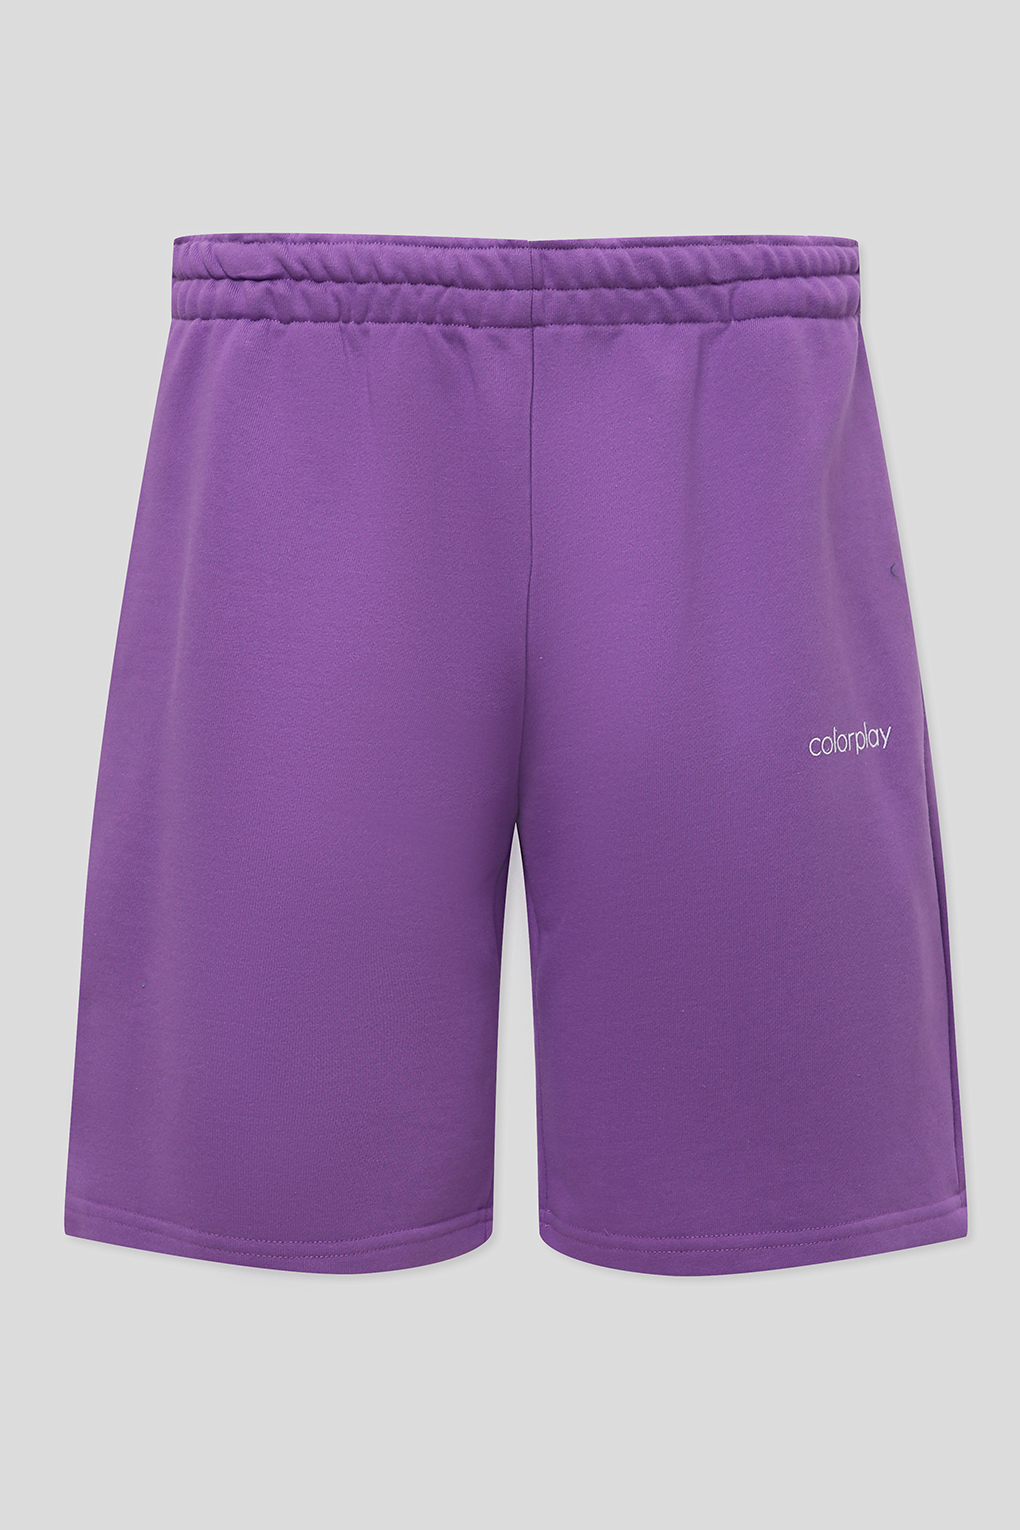 Повседневные шорты мужские COLORPLAY CP22041625-018 фиолетовые 2XL